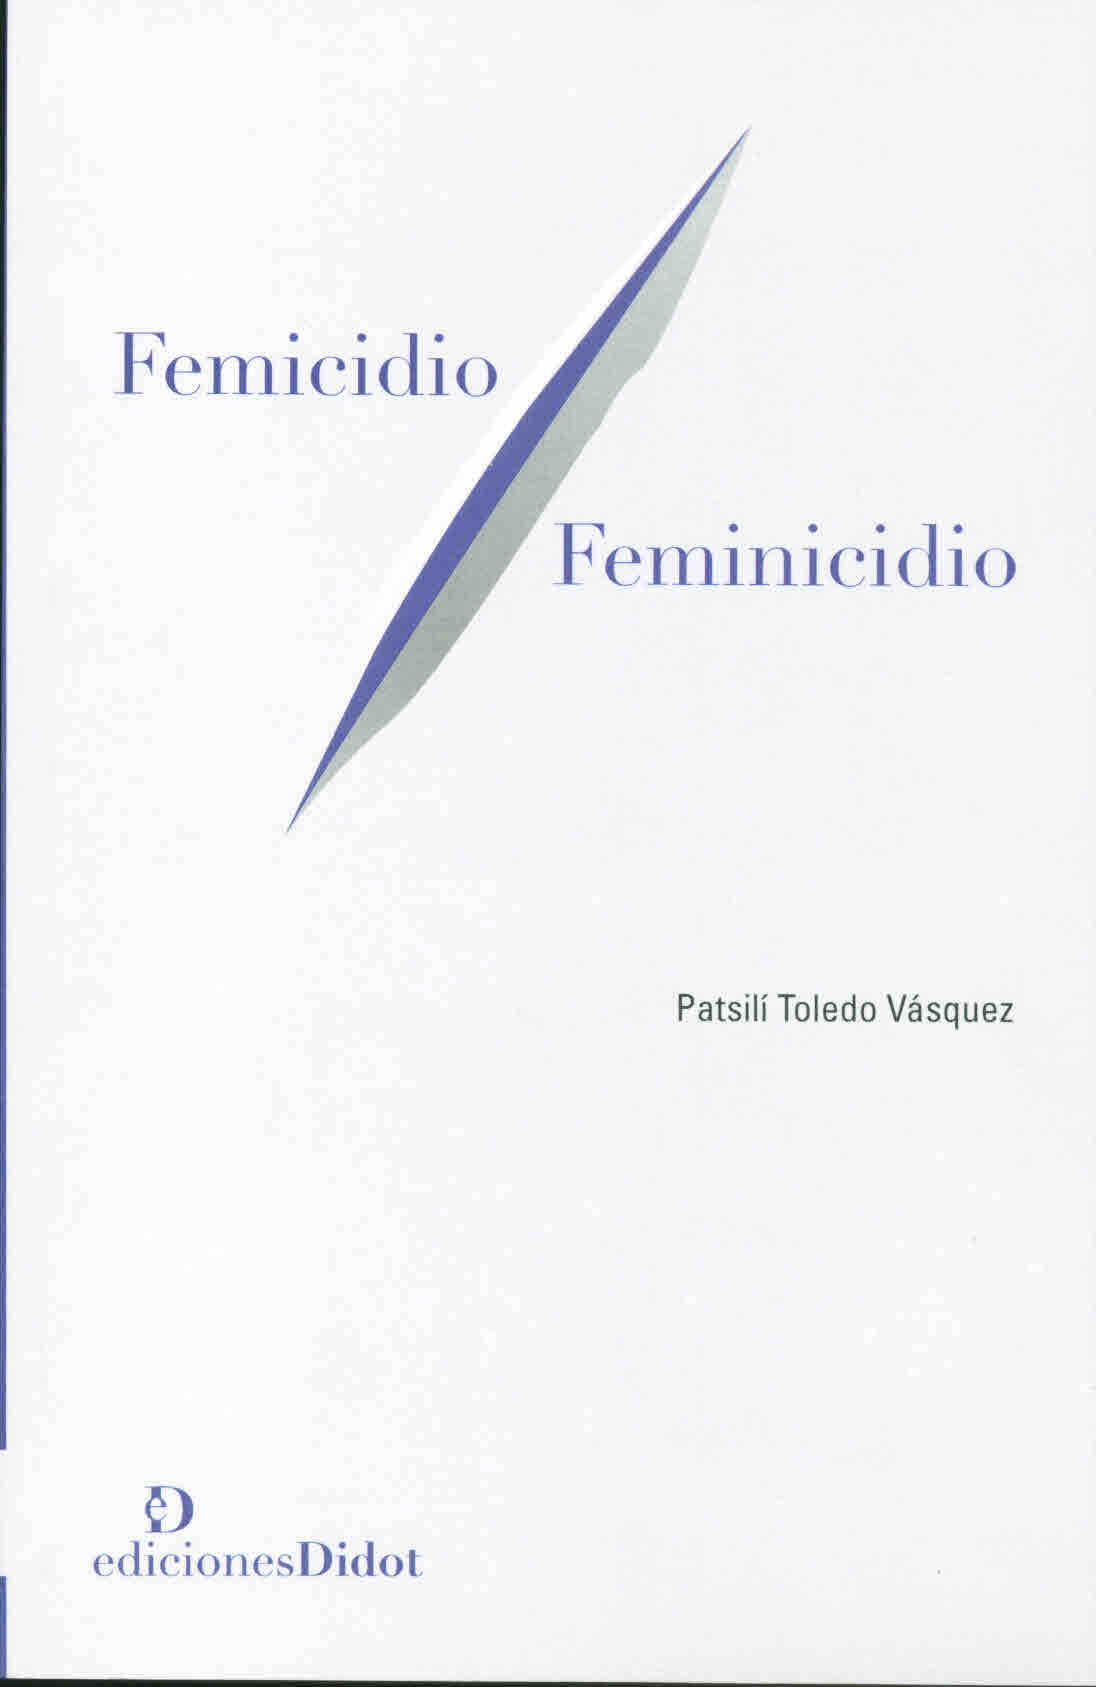 Femicidio/feminicidio